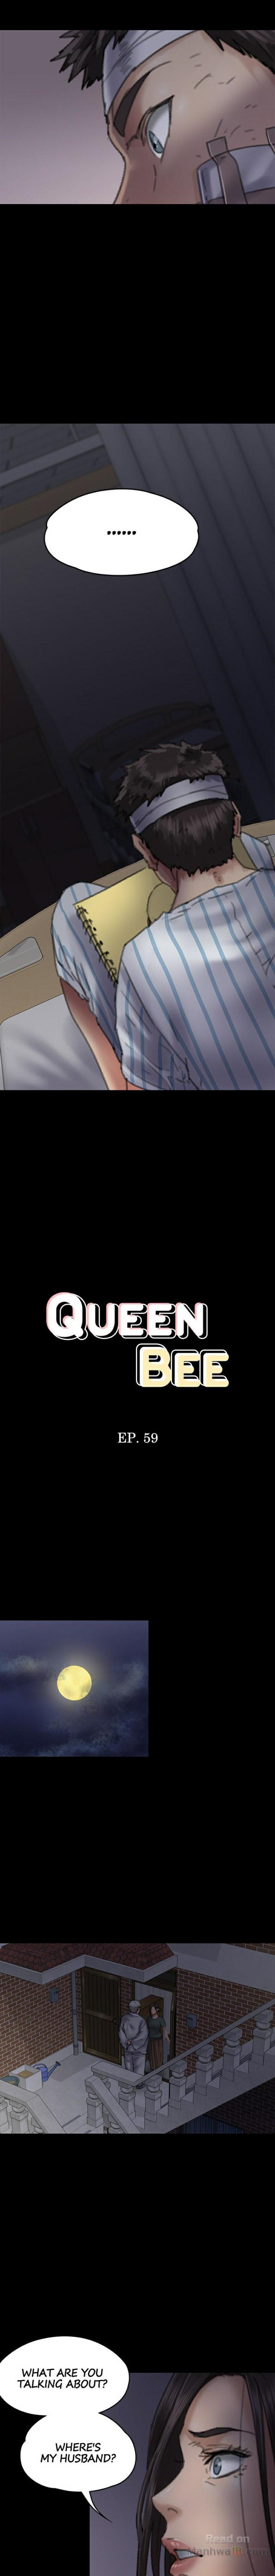 Queen Bee/Landlord's Little Girl - Ami sex scenes compilation 39 - 64 104